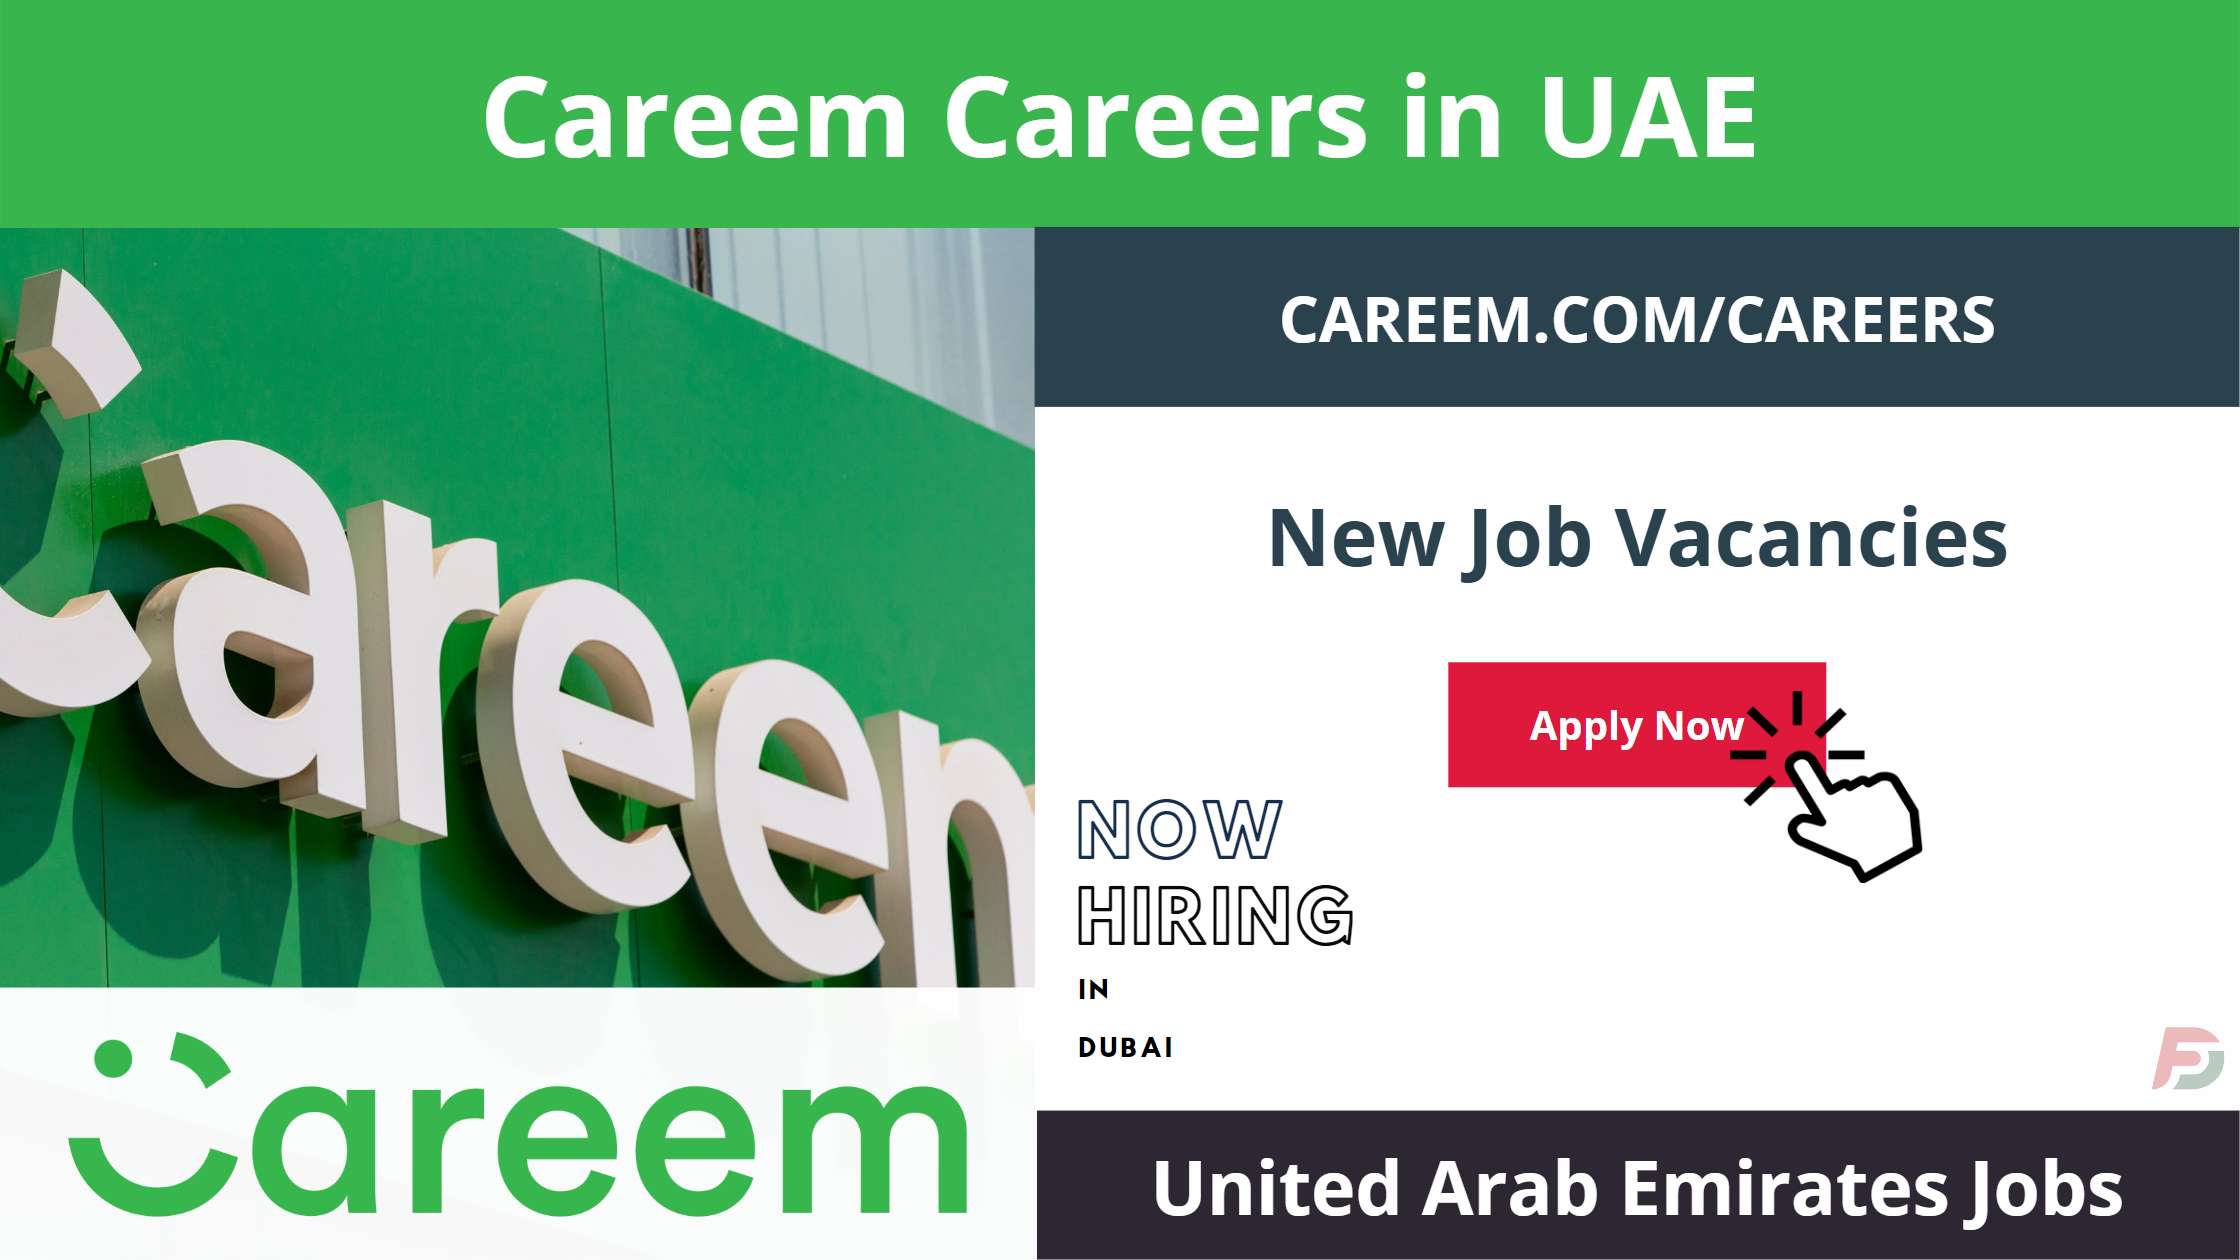 Careem Careers in UAE